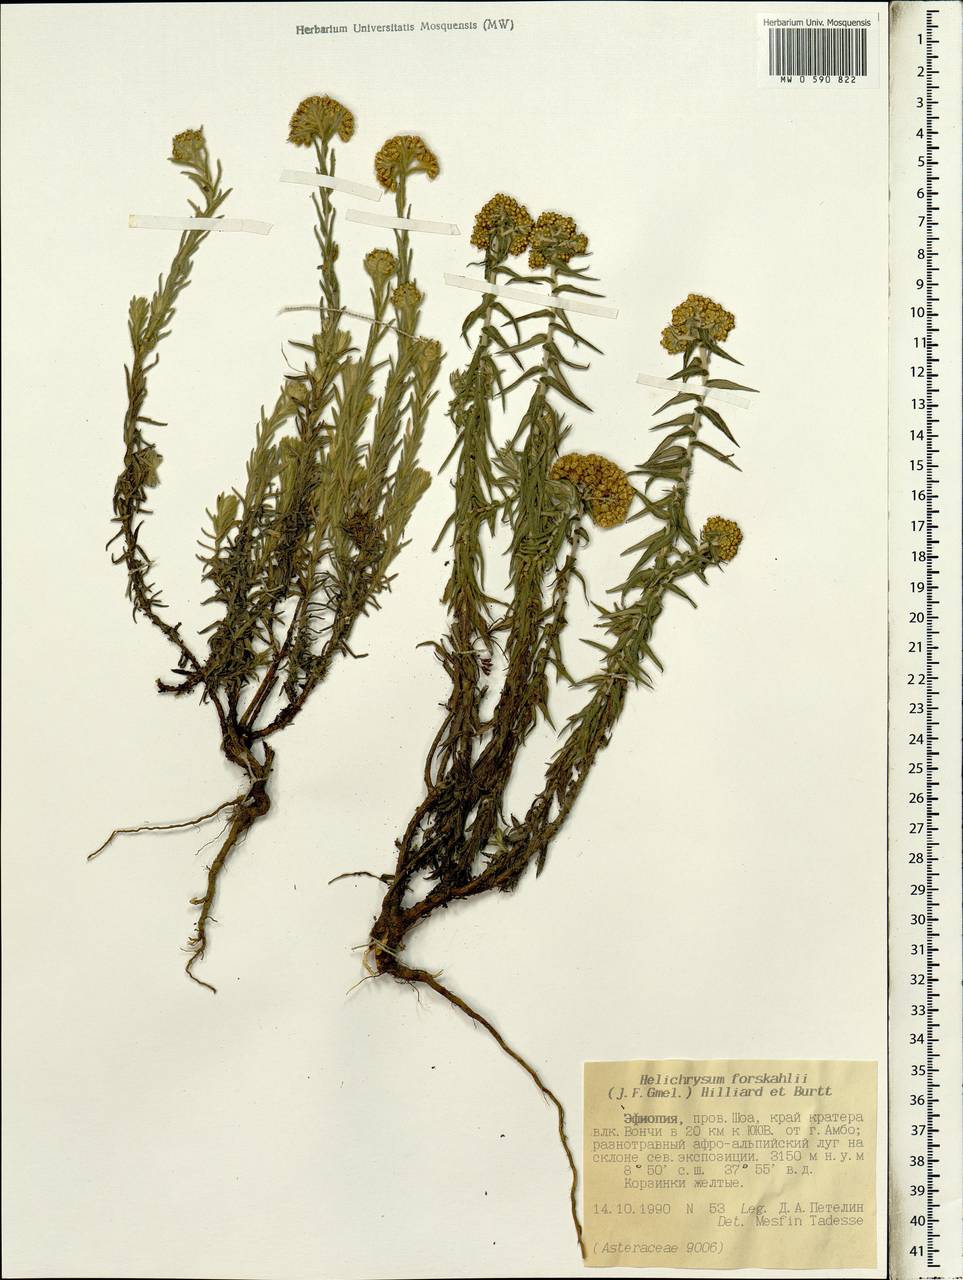 Helichrysum forskahlii (J. F. Gmel.) Hilliard & Burtt, Africa (AFR) (Ethiopia)